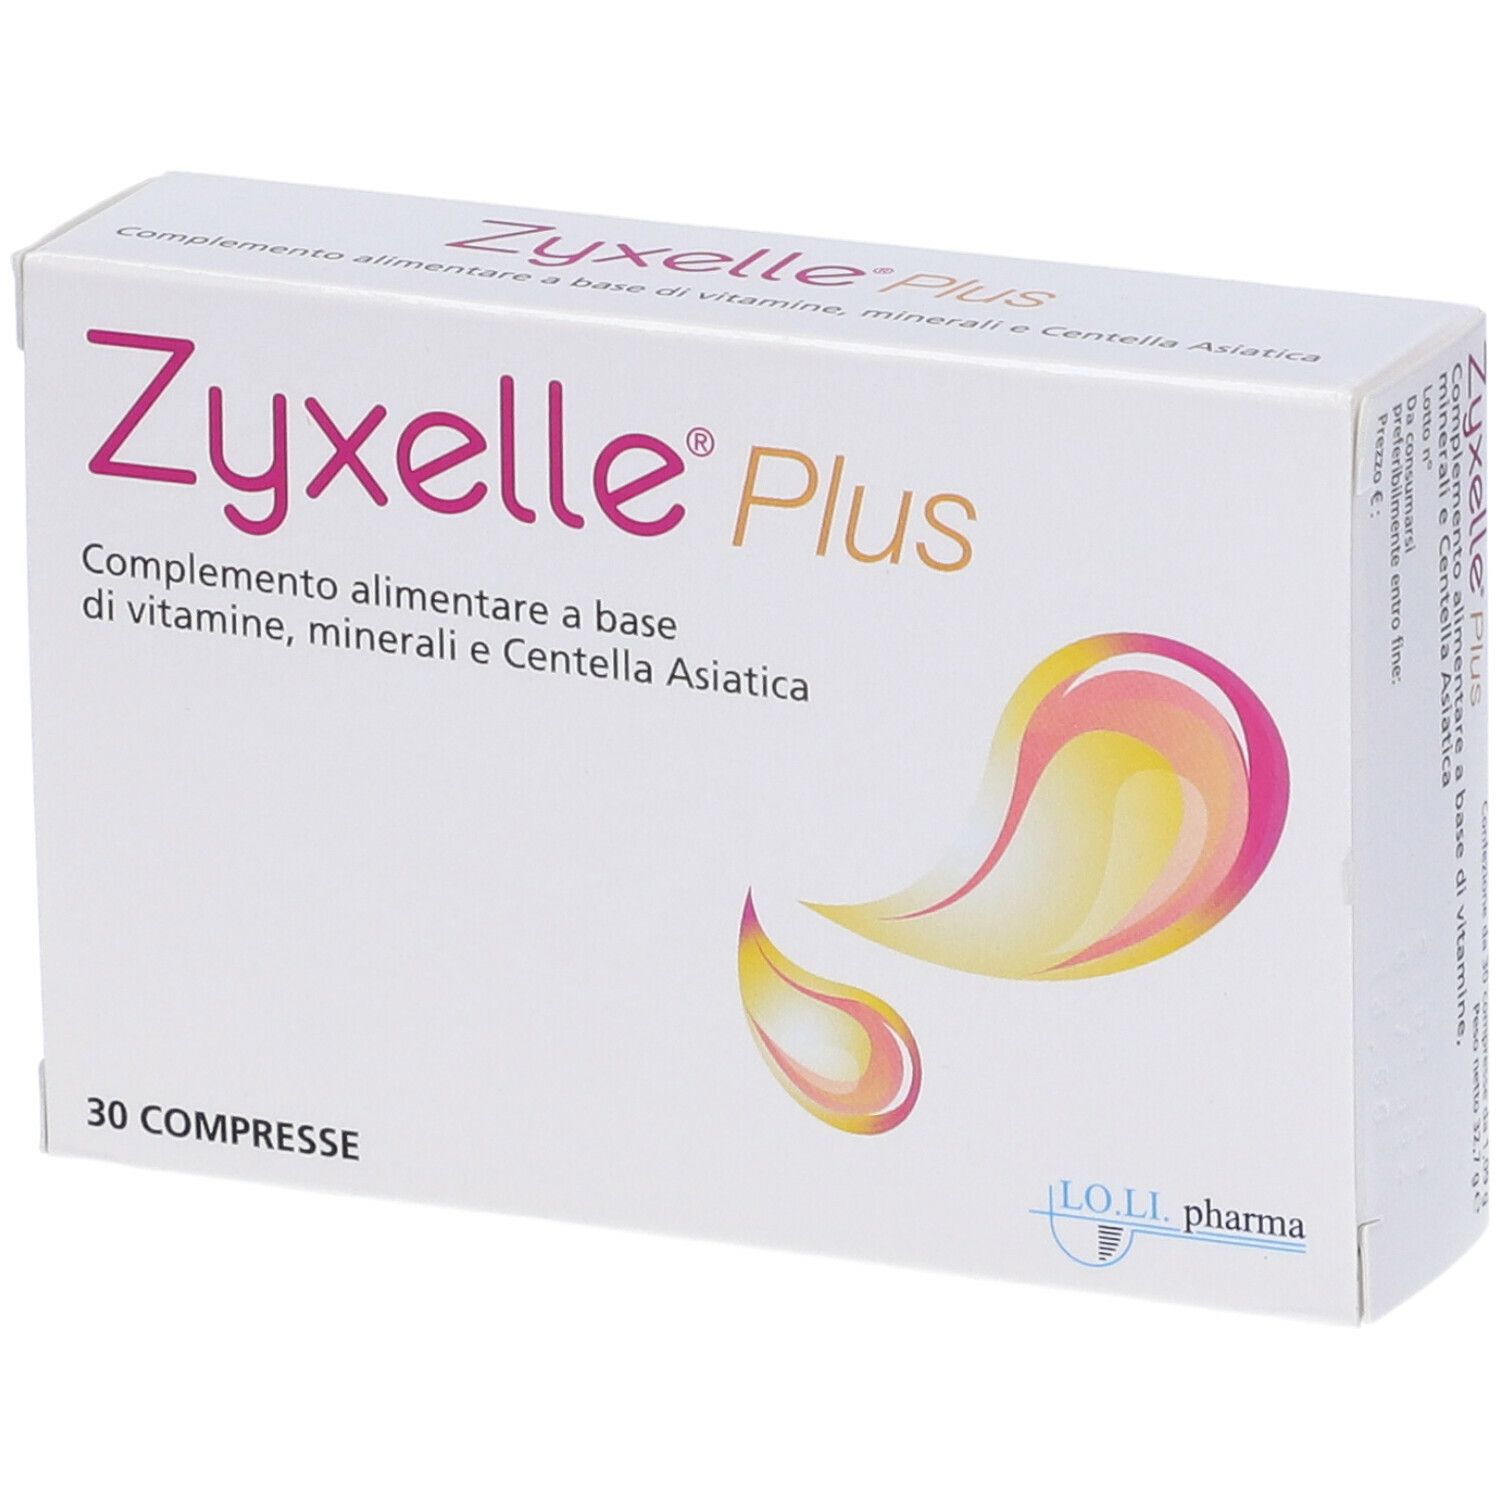 Zyxelle Plus